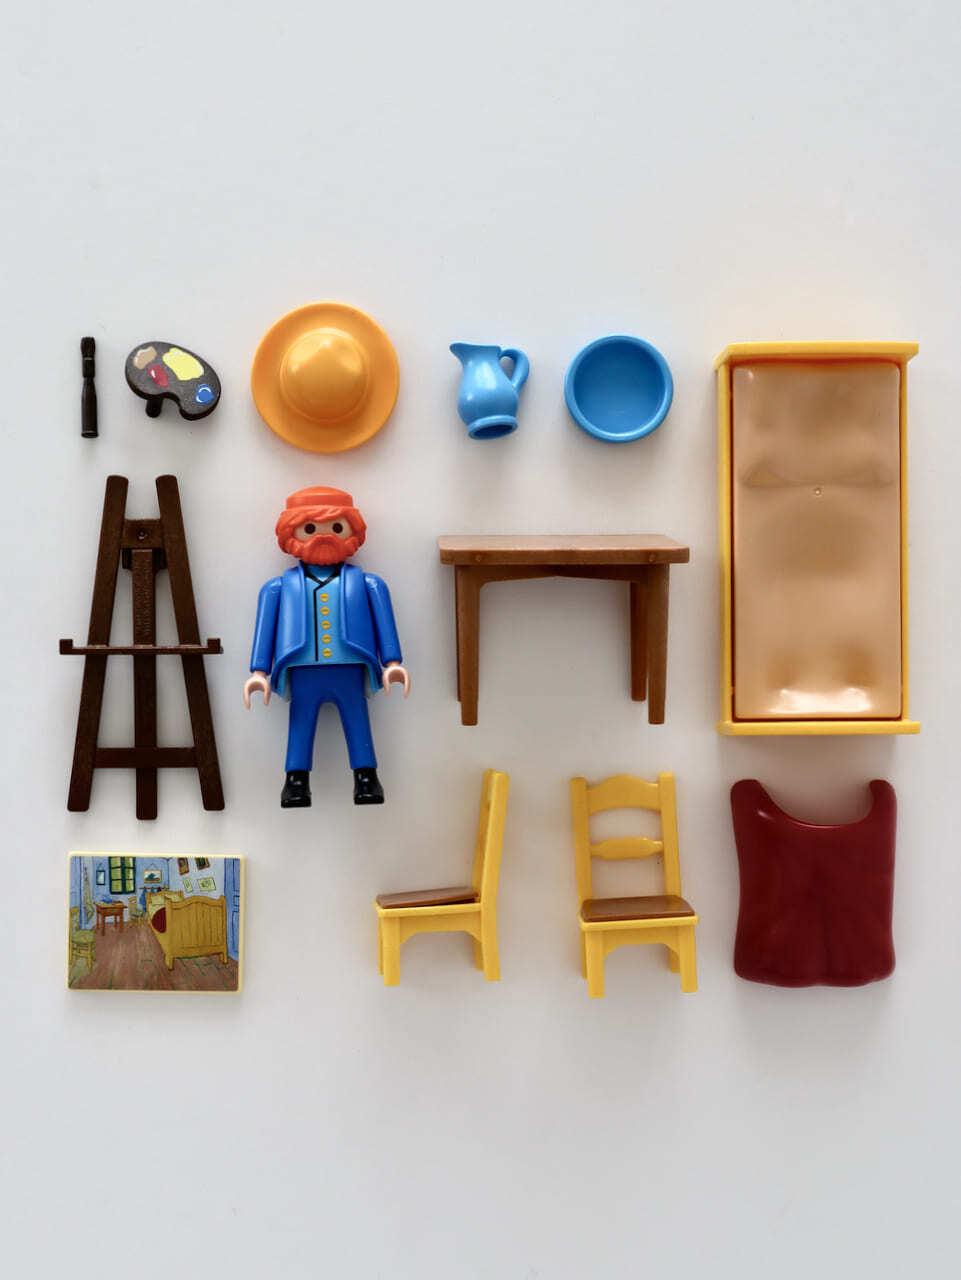 プレイモービル 「ゴッホの寝室」 ゴッホ美術館 / Playmobil "The Bedroom" 70687 Van Gogh Museum |  Sensitivity and Boldness